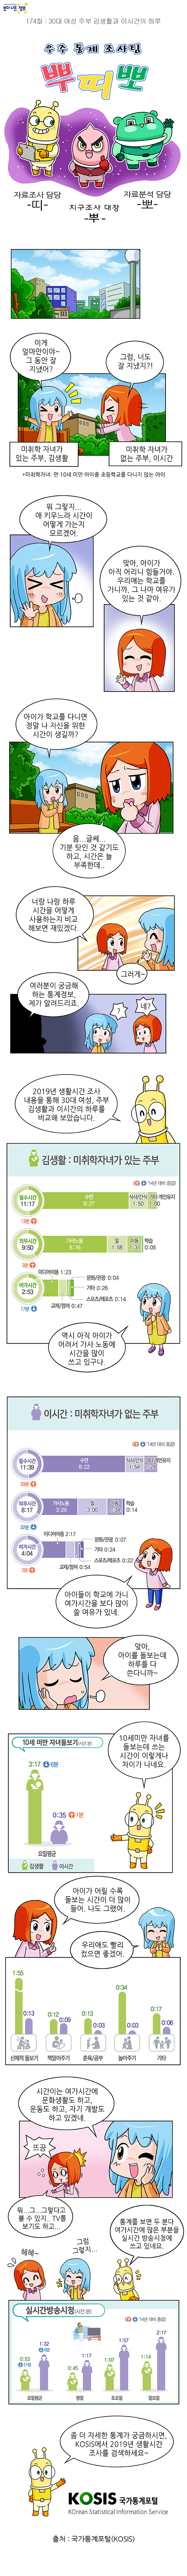 제174화 : 30대 여성 주부 김생활과 이시간의 하루